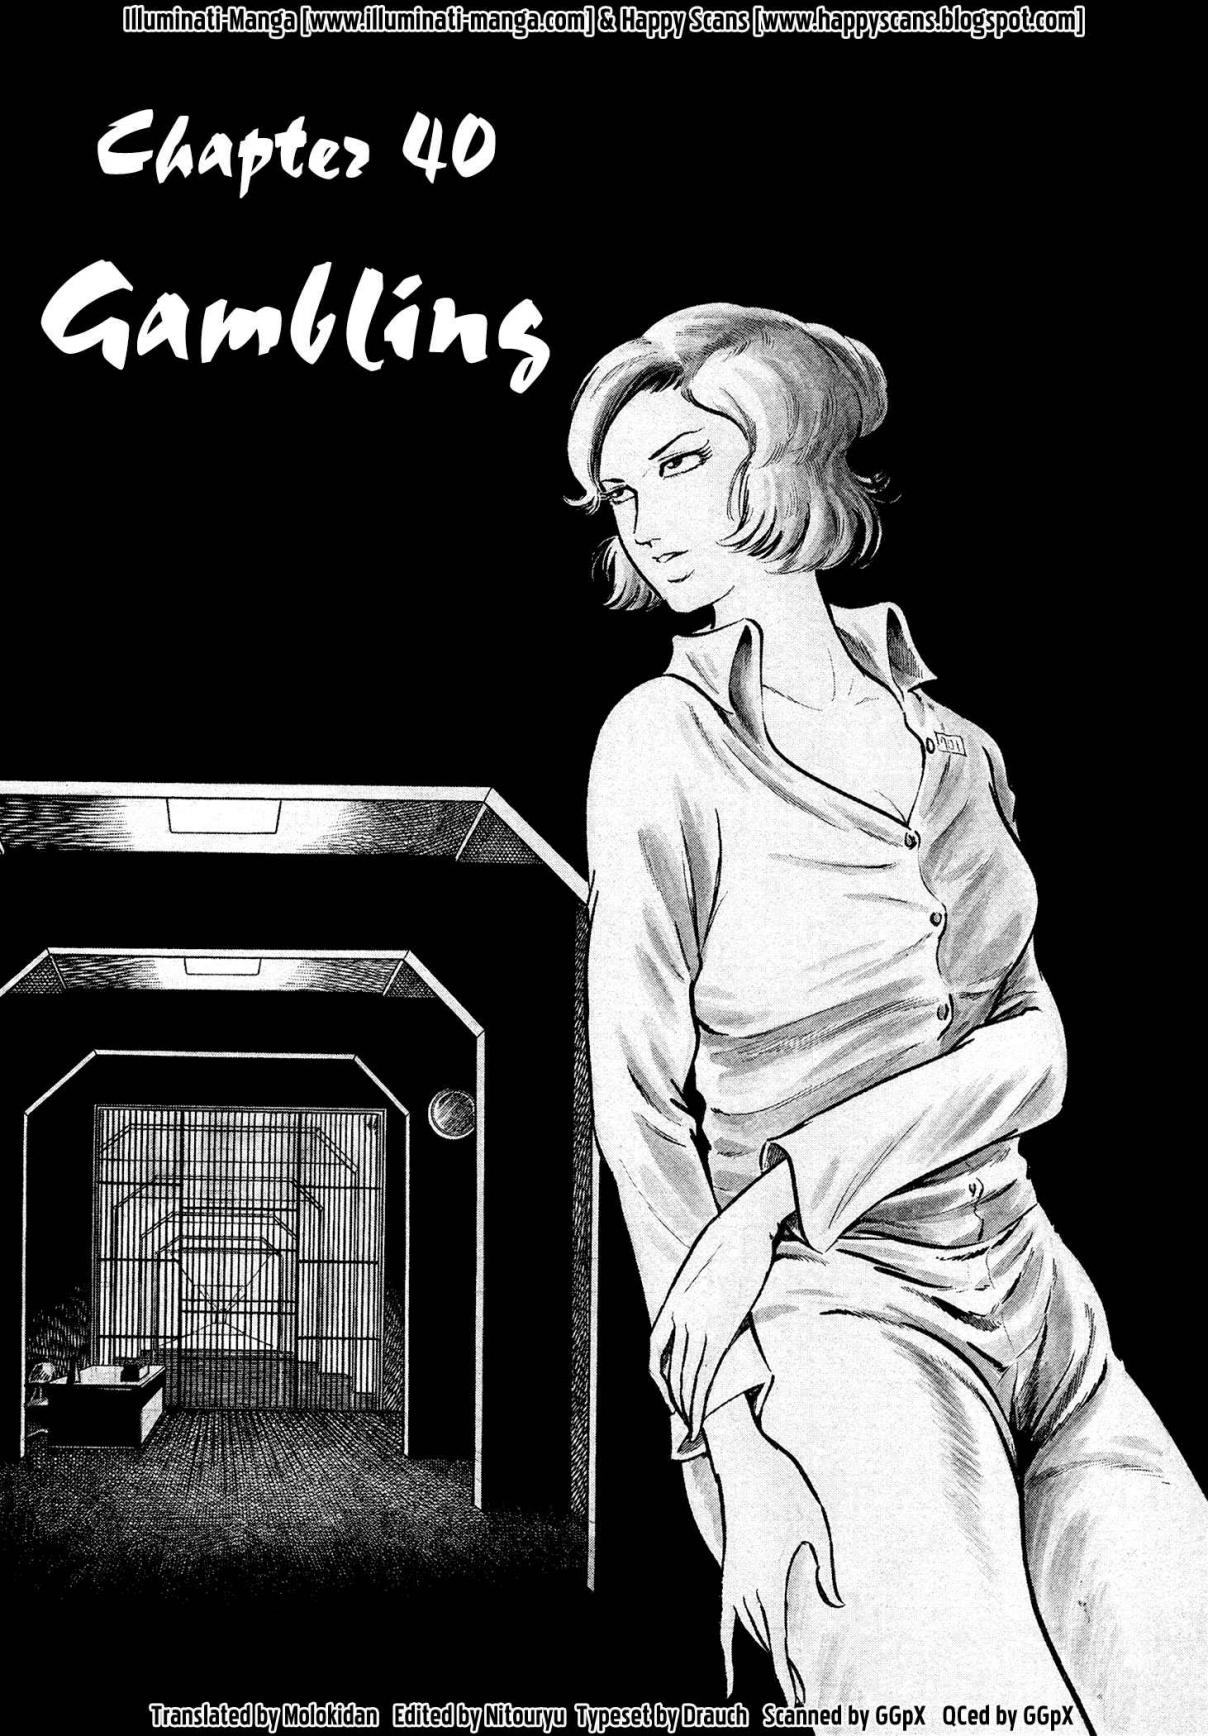 Sasori Vol. 3 Ch. 40 Gambling